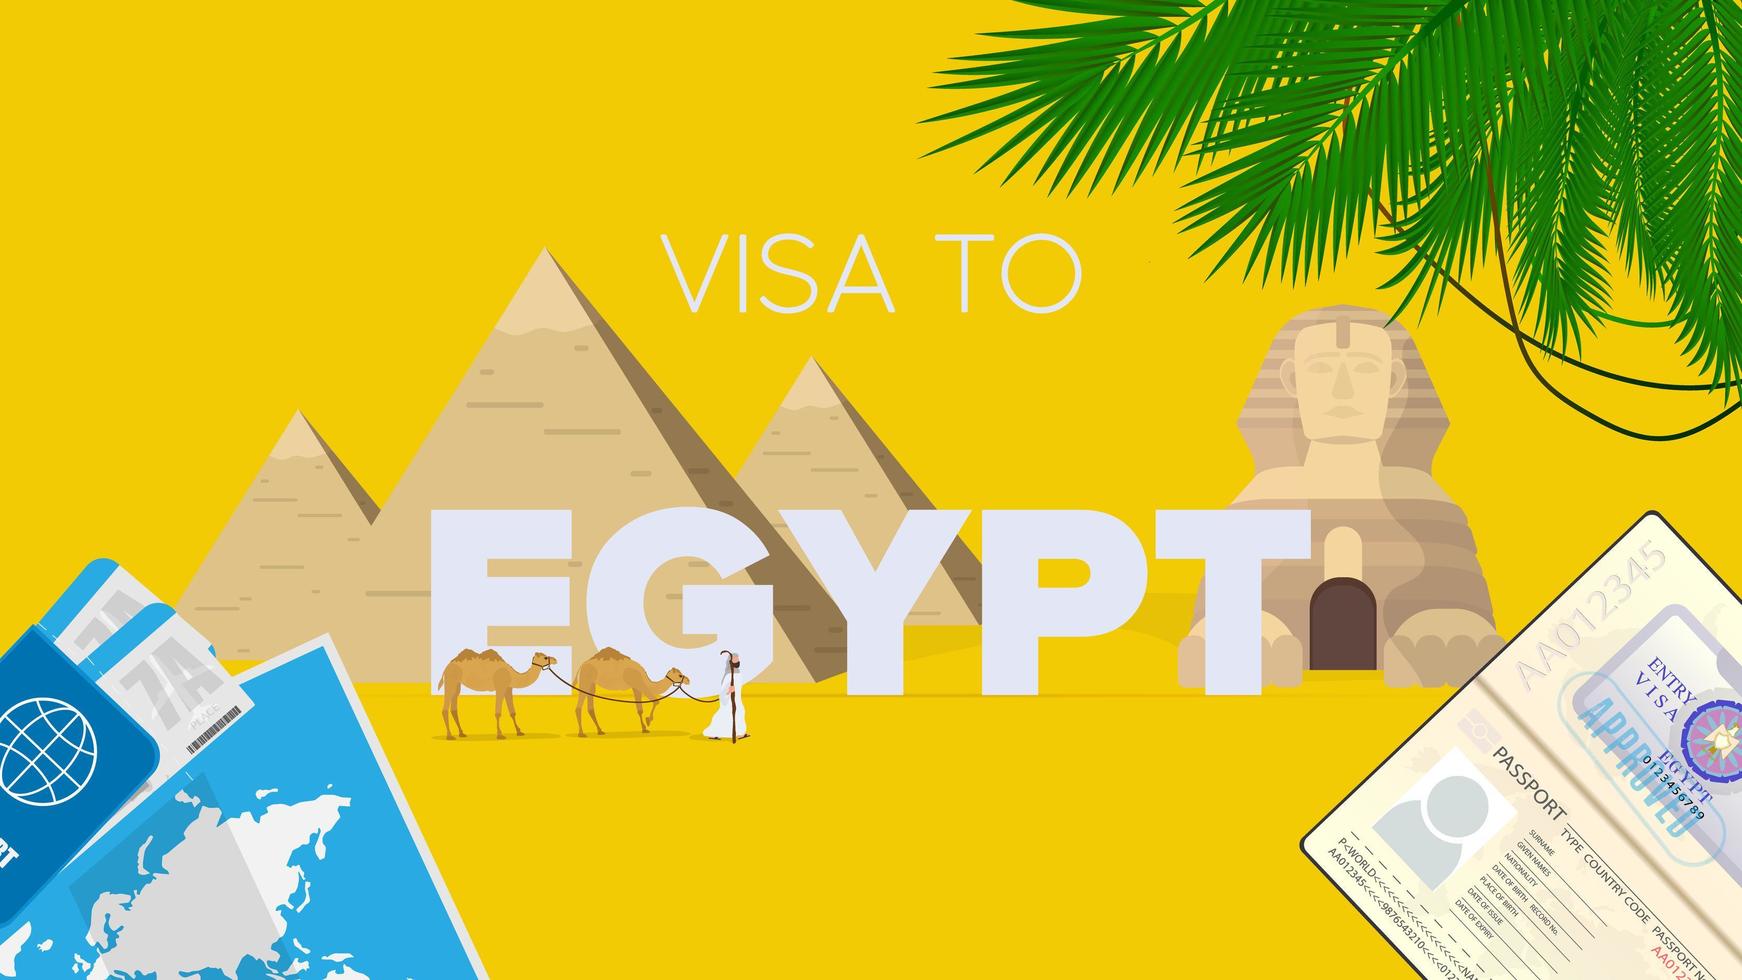 egitto visto bandiera gialla. passaporto, biglietti aerei, mappa del mondo, visto d'Egitto, carovana di cammelli, piramidi egizie e sfinge. poster vettoriale. vettore